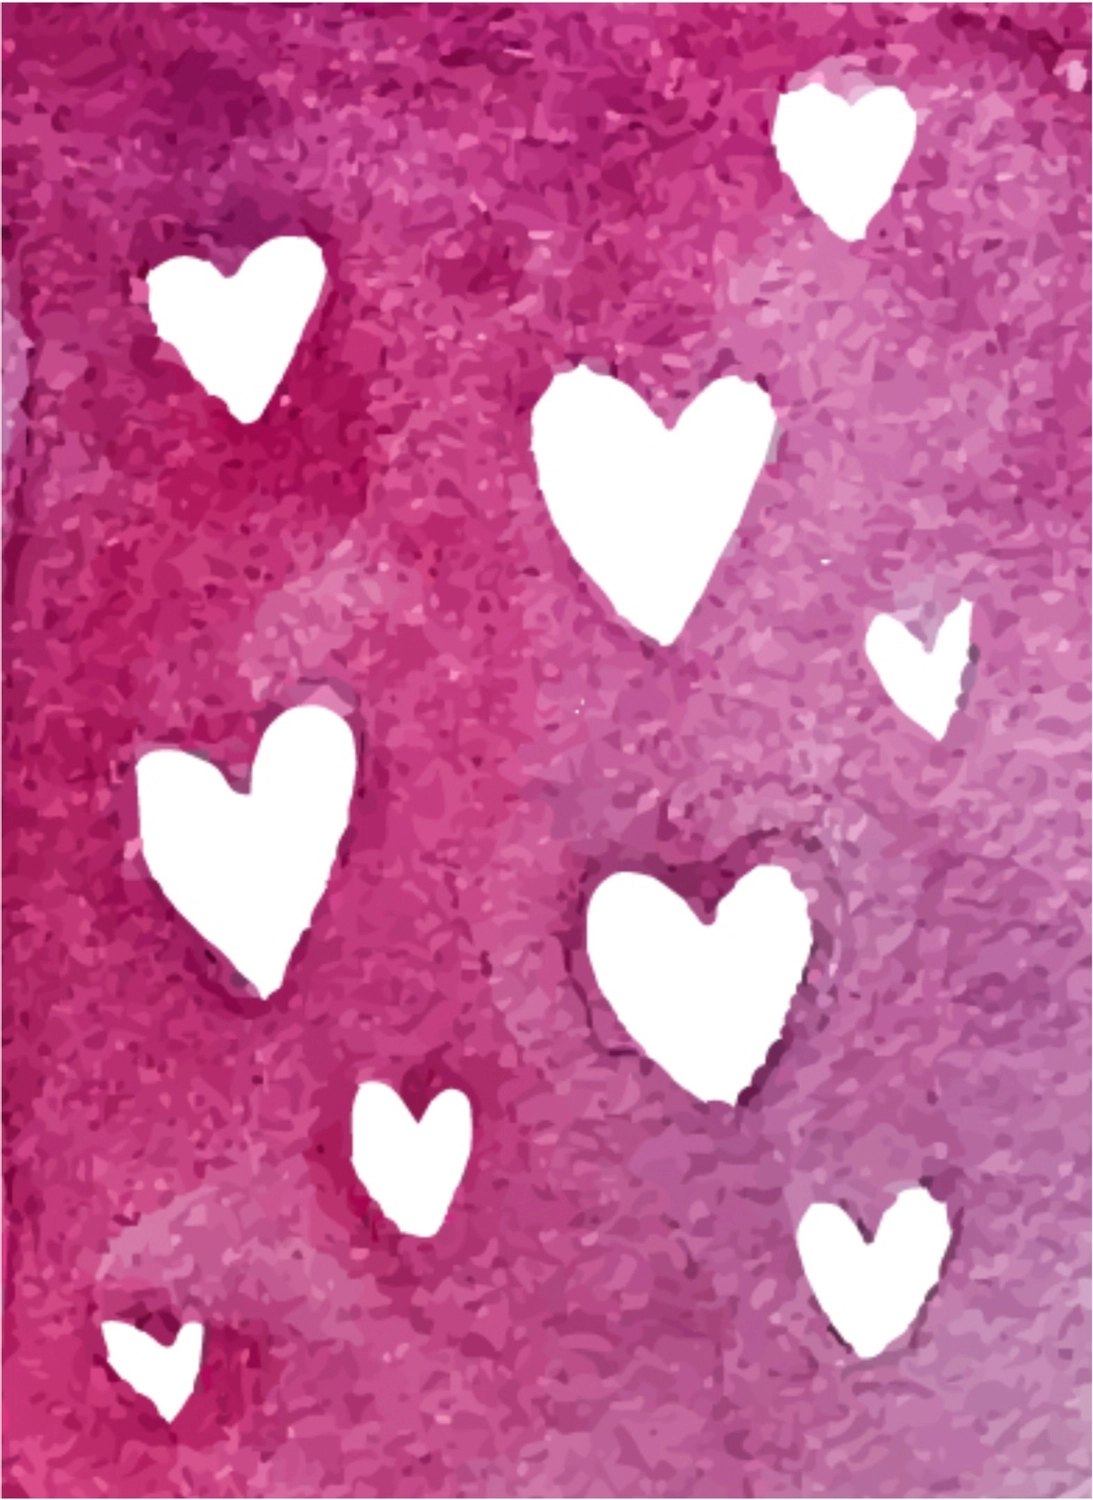 バレンタインデーグリーティングカード　紫地に白抜きのハート, 手描き, 作成, デザイン, グリーティングカードテンプレート